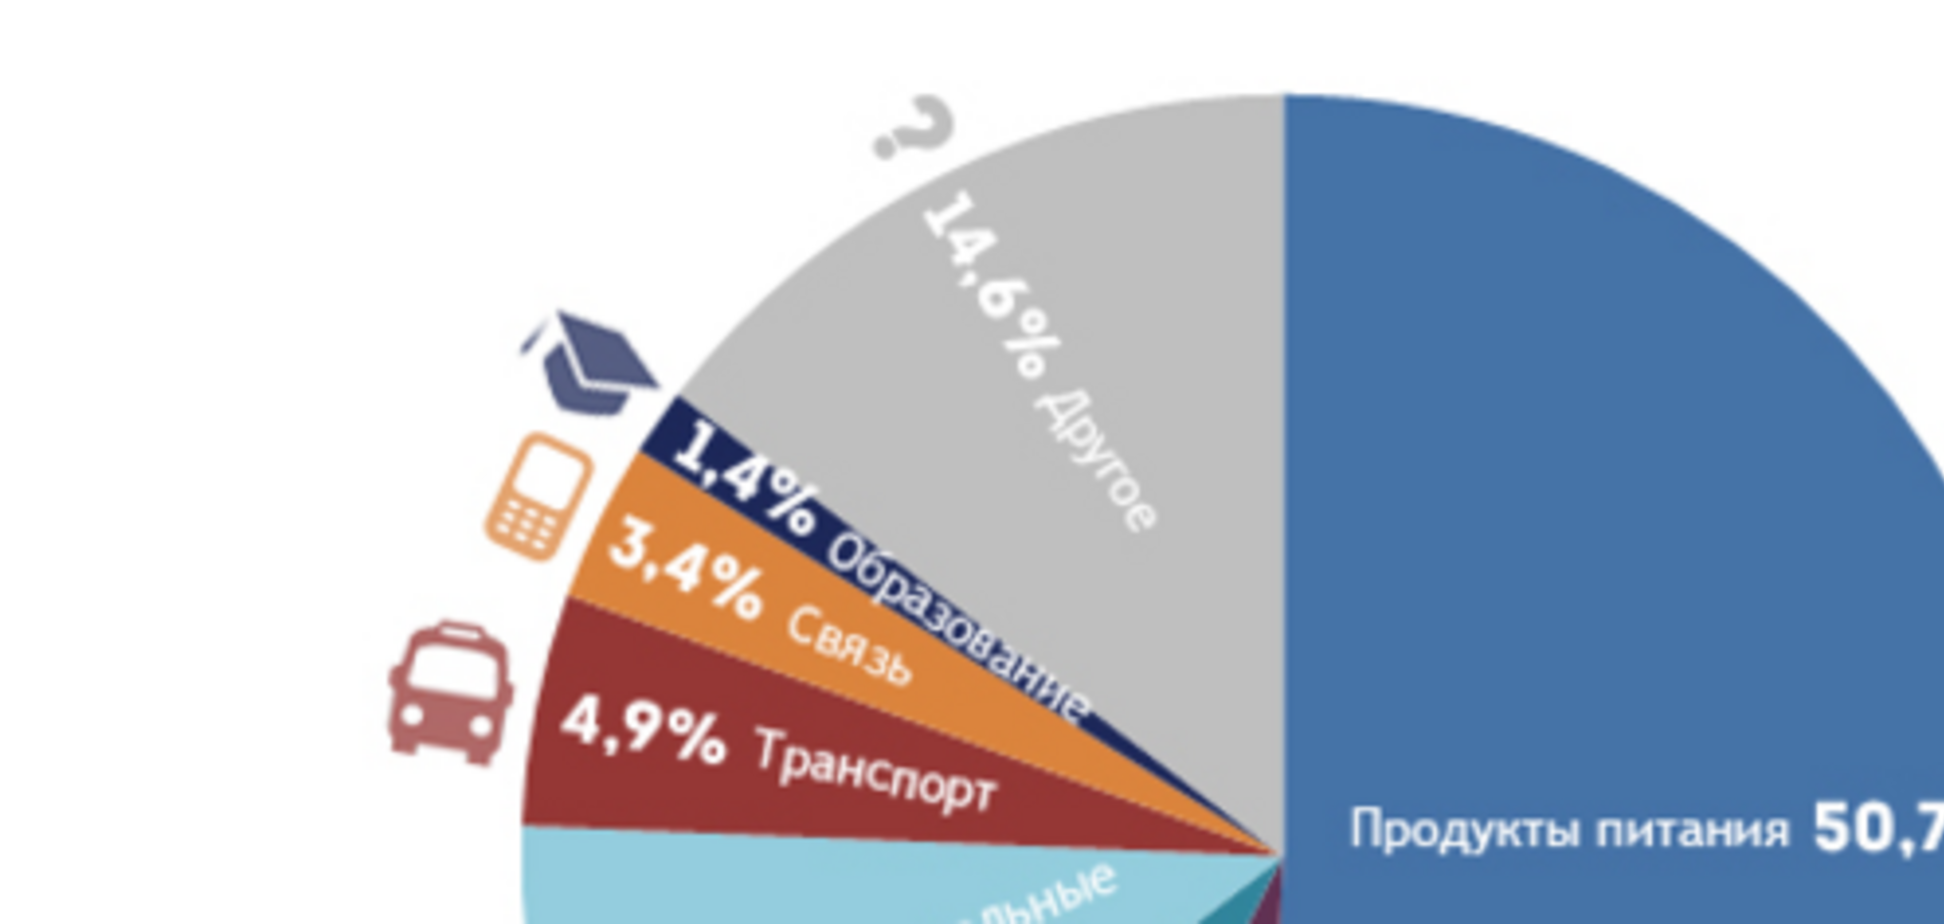 Стало известно, из чего состоит инфляция в Украине: инфографика